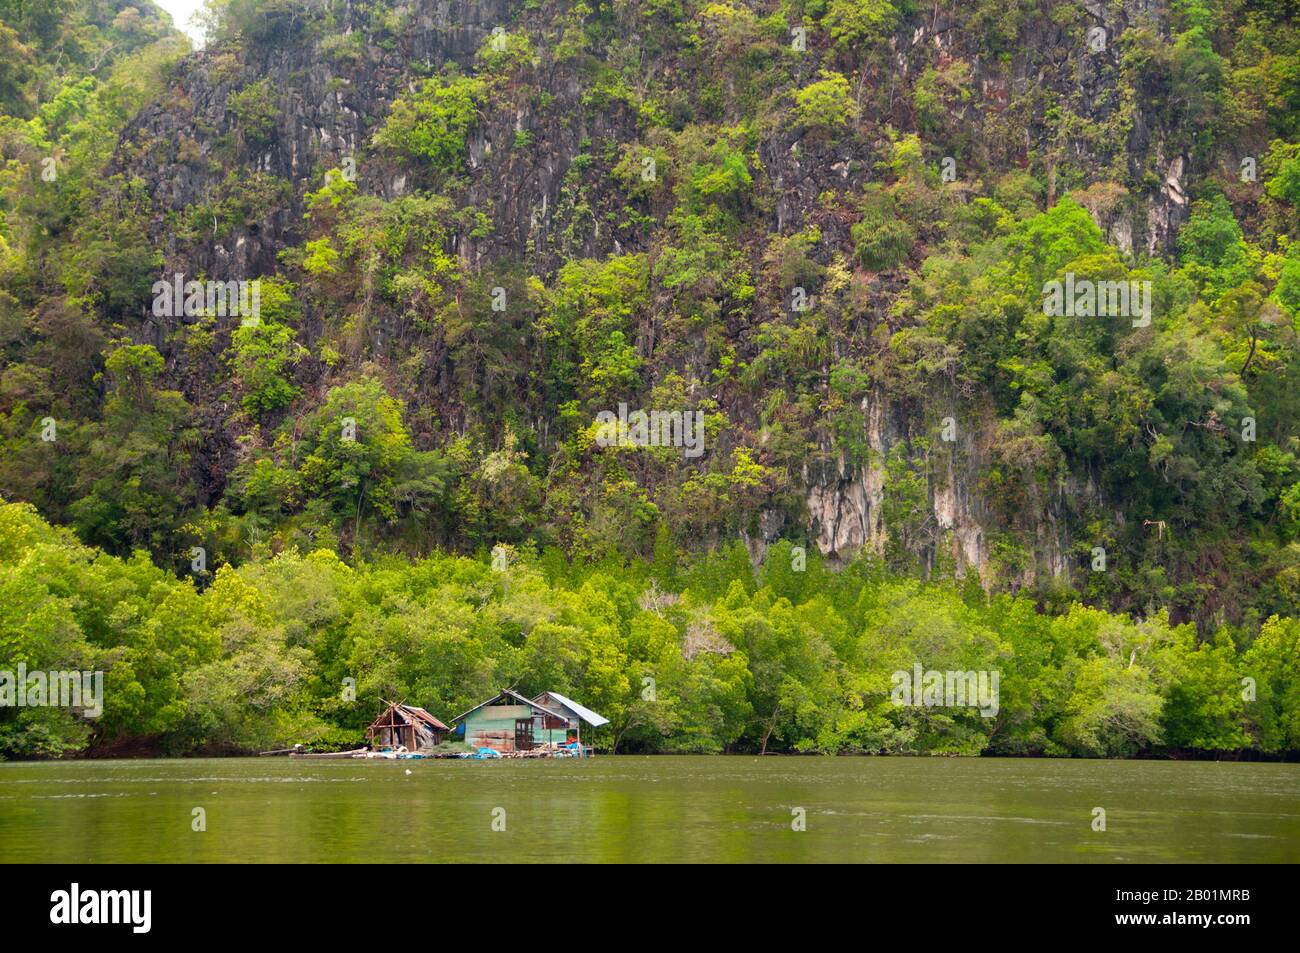 Thailandia: Allevamento ittico galleggiante, rispetto al Parco nazionale di Bokkharani, provincia di Krabi. Il Parco Nazionale di Than Bokkharani si trova nella provincia di Krabi a circa 45 chilometri (28 miglia) a nord-ovest della città di Krabi. Il parco copre un'area di 121 chilometri quadrati (47 miglia quadrate) ed è caratterizzato da una serie di affioramenti calcarei, foreste pluviali sempreverdi, foreste di mangrovie, torbiere e molte isole. Ci sono anche numerose grotte e complessi rupestri con alcune spettacolari stalagmiti e stalattiti. Il Bokkharani è incentrato su due famose grotte, Tham Lot e Tham Phi Hua. Foto Stock